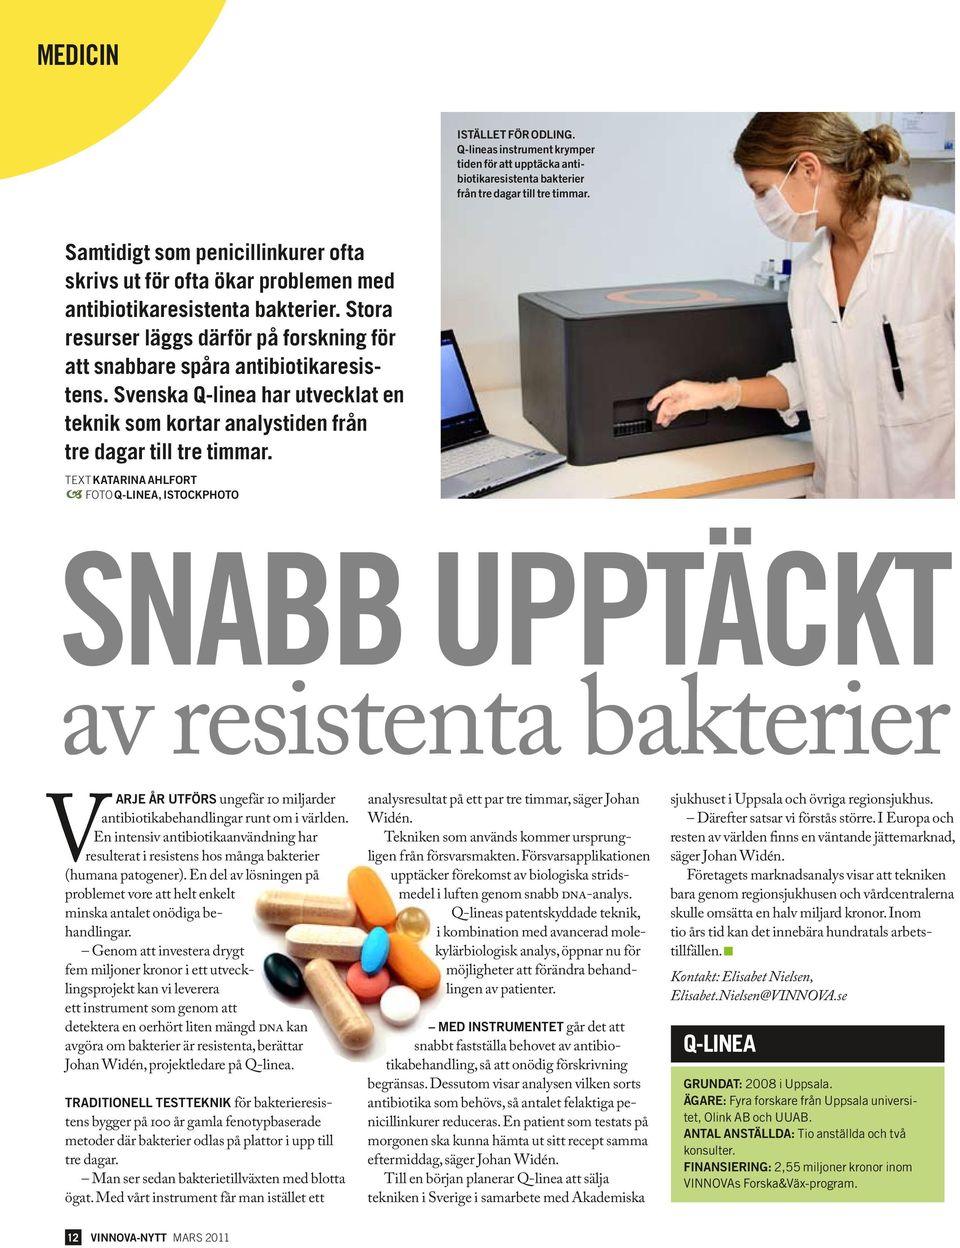 Svenska Q-linea har utvecklat en teknik som kortar analystiden från tre dagar till tre timmar.